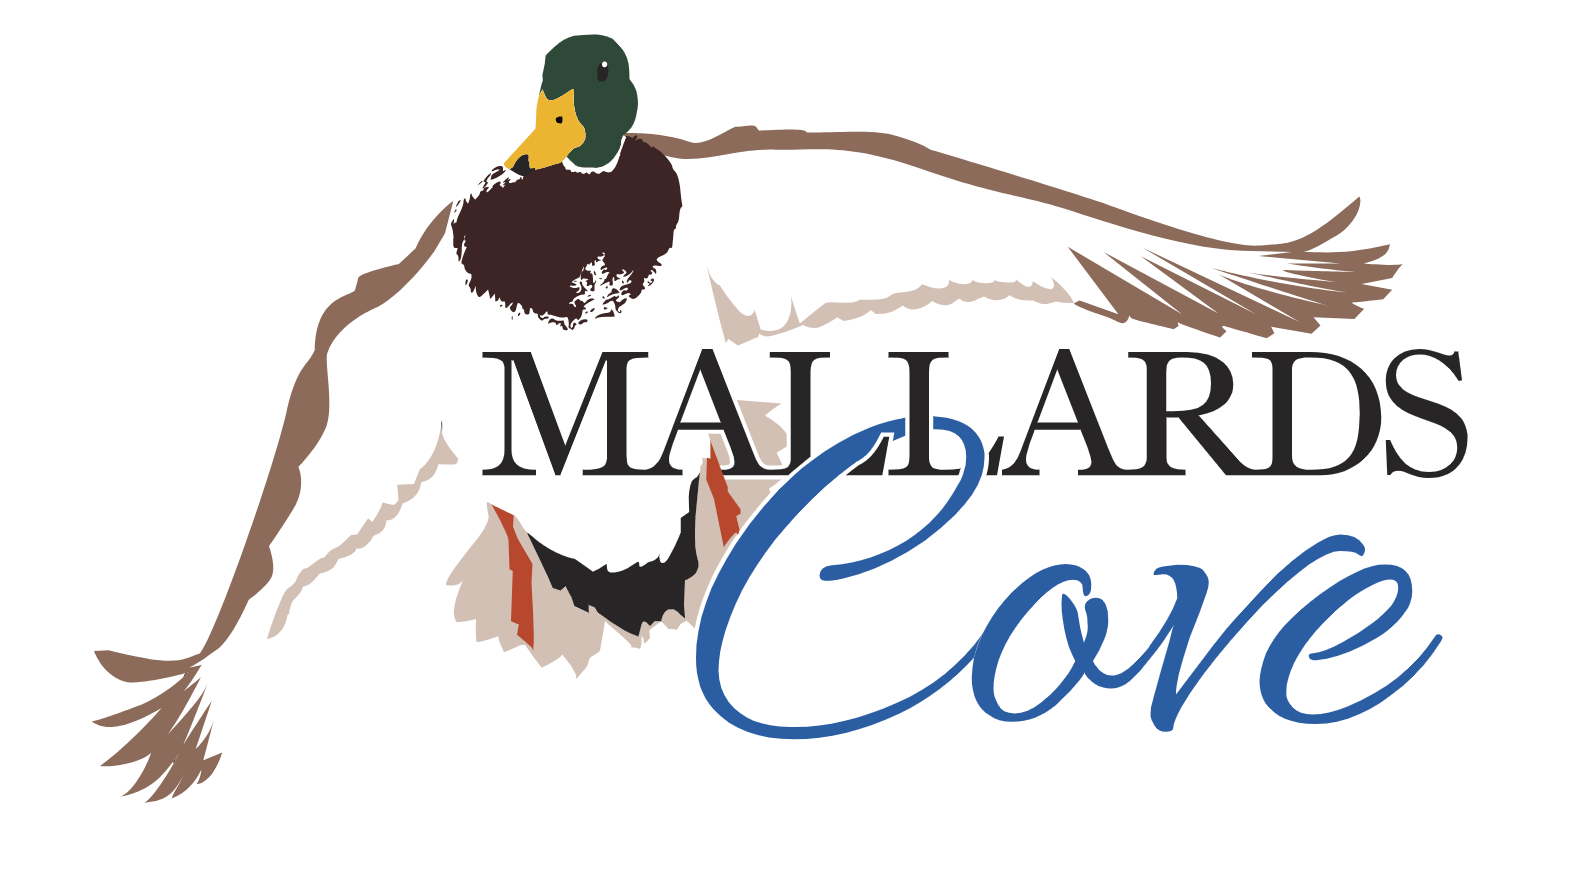 Mallars Cove logo